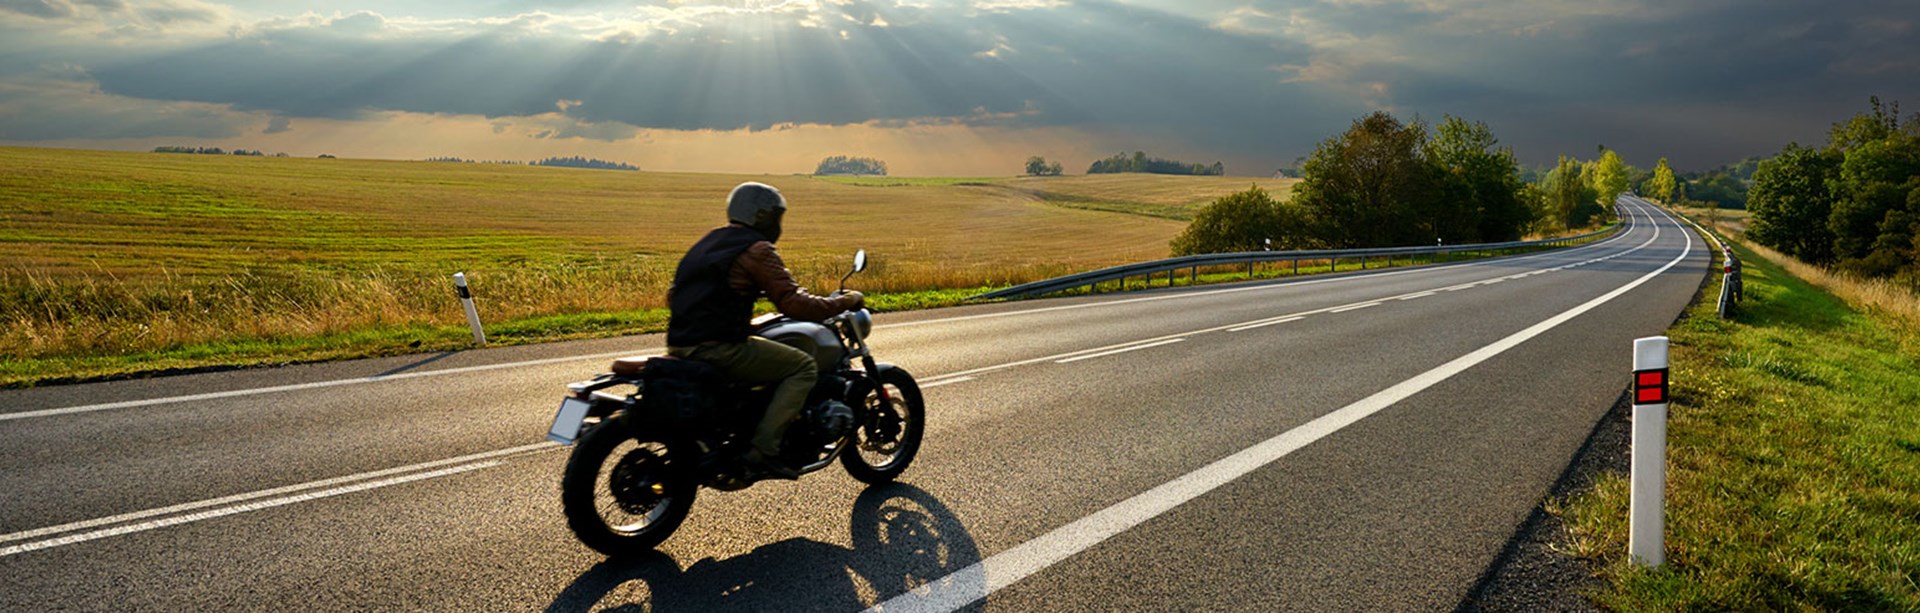 Motorcyklist kör på en lång en asfalterad väg